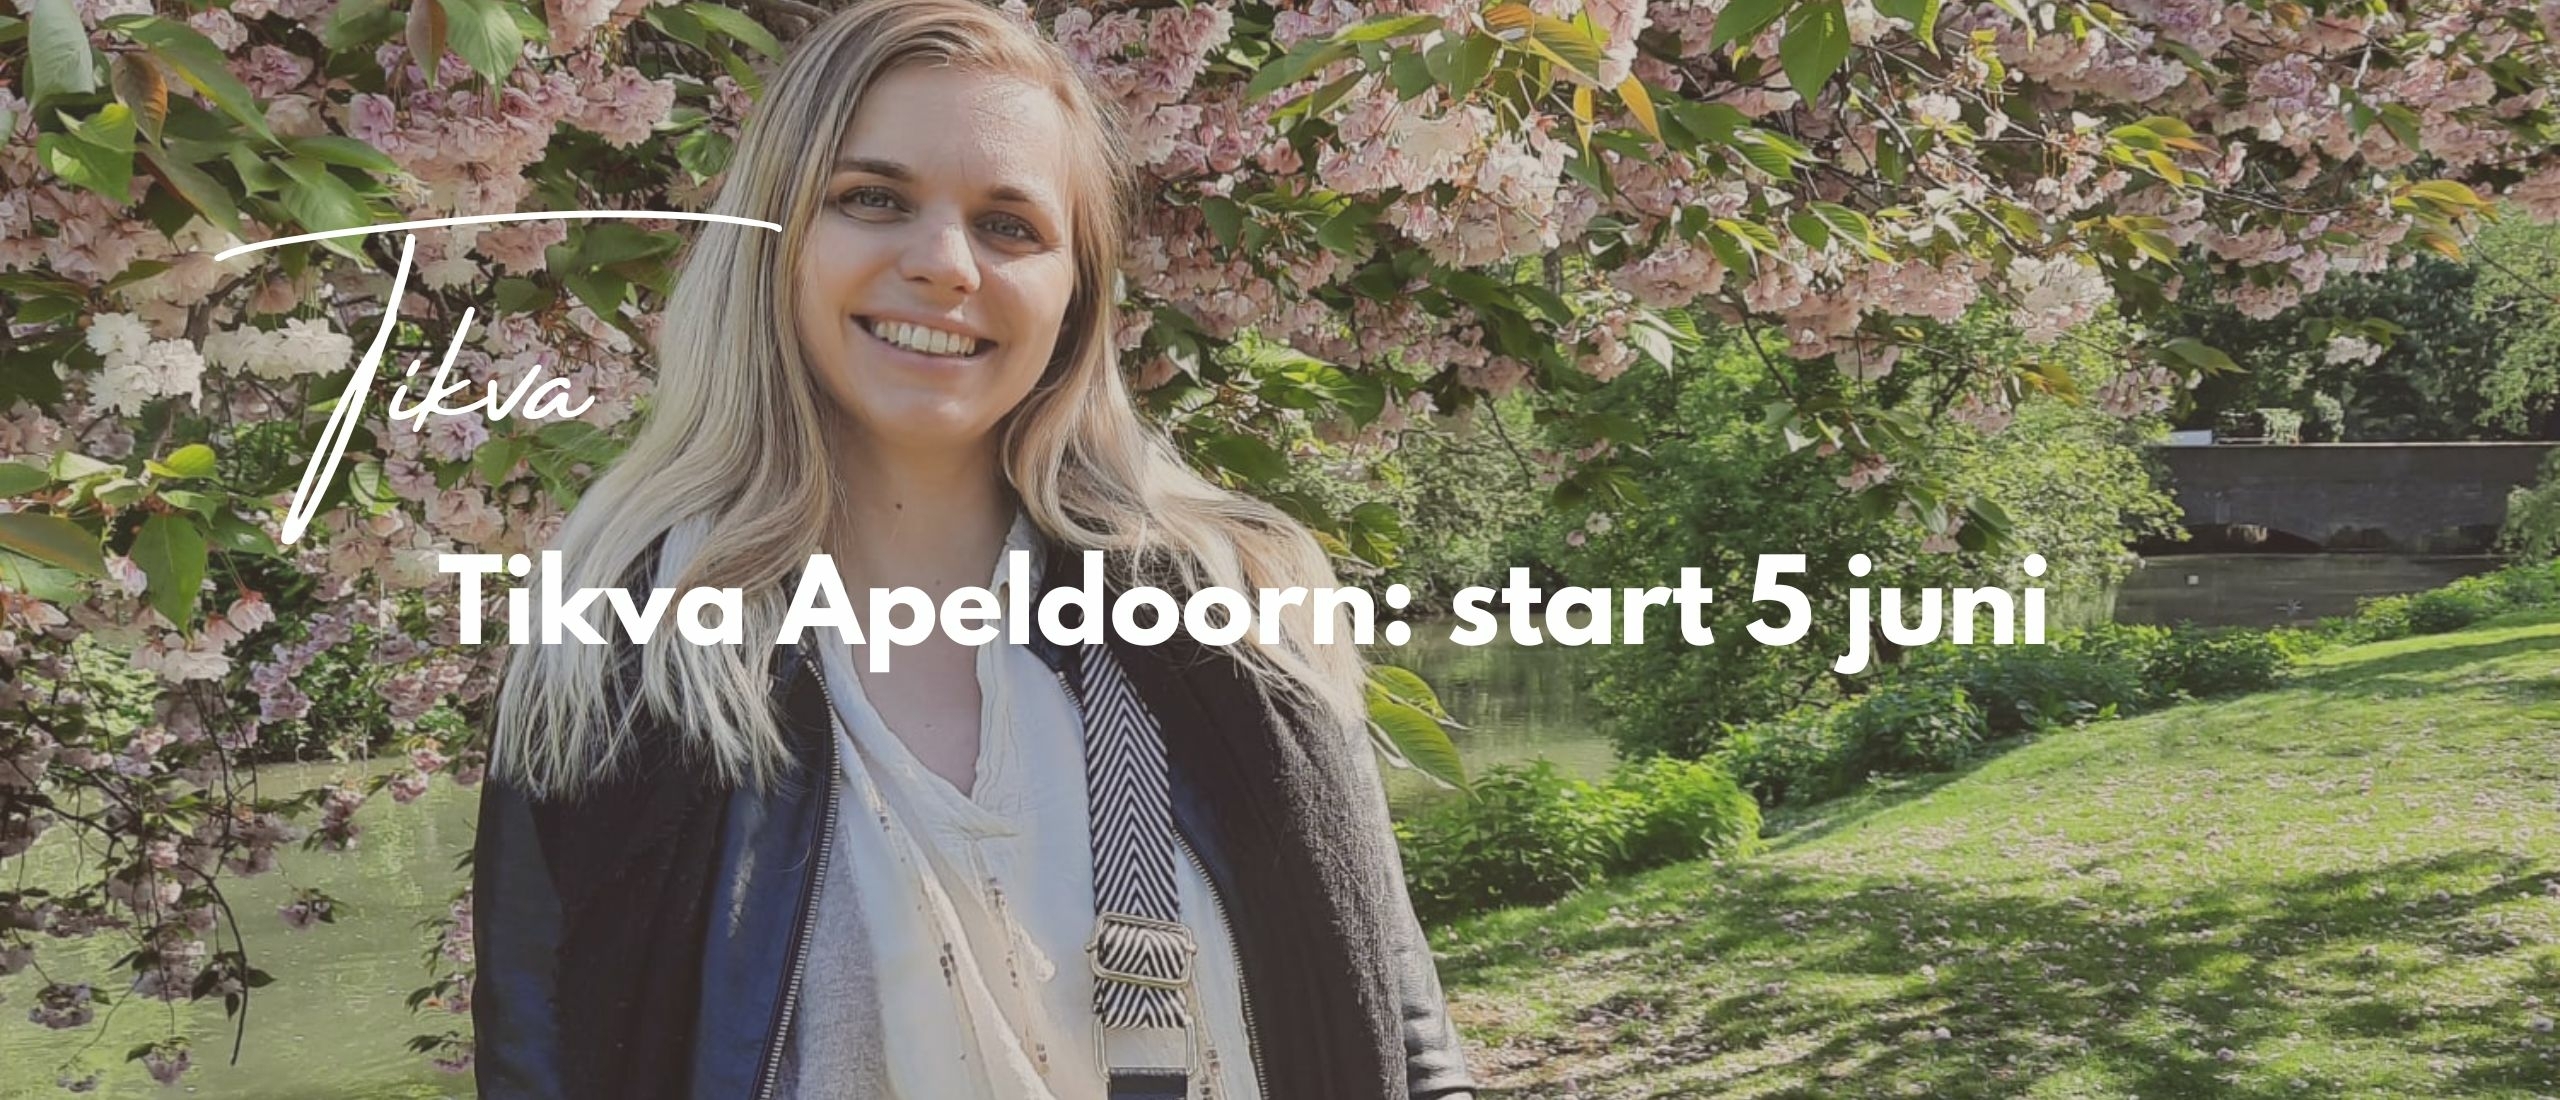 Tikva Apeldoorn: start 5 juni